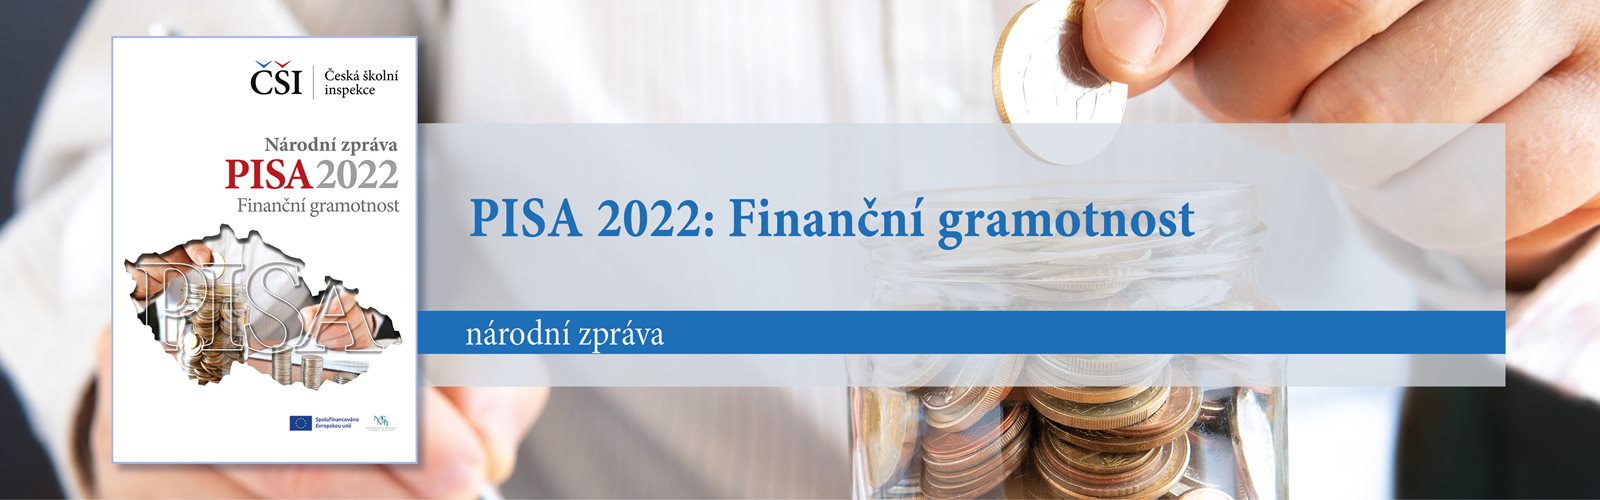 NZ PISA 2022 Finanční gramotnost